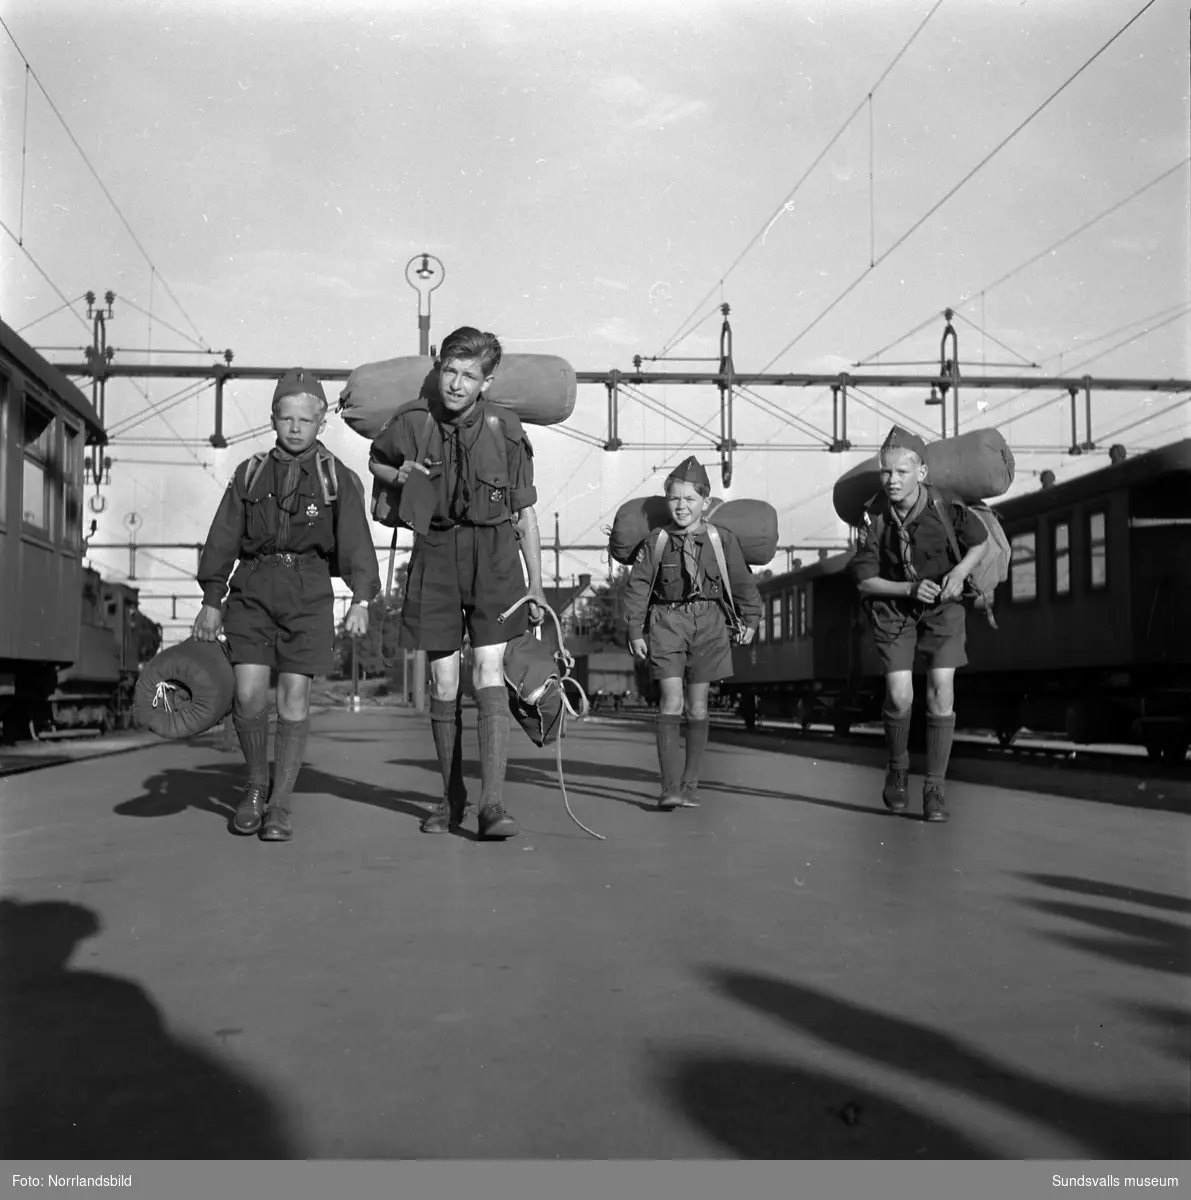 Scouter från Medelpad åker iväg på - och kommer hem ifrån - förbundslägret Åvatyr 1950, i Åva, Tyresö. Bilder från avresa och hemkomsten till järnvägsstationen.